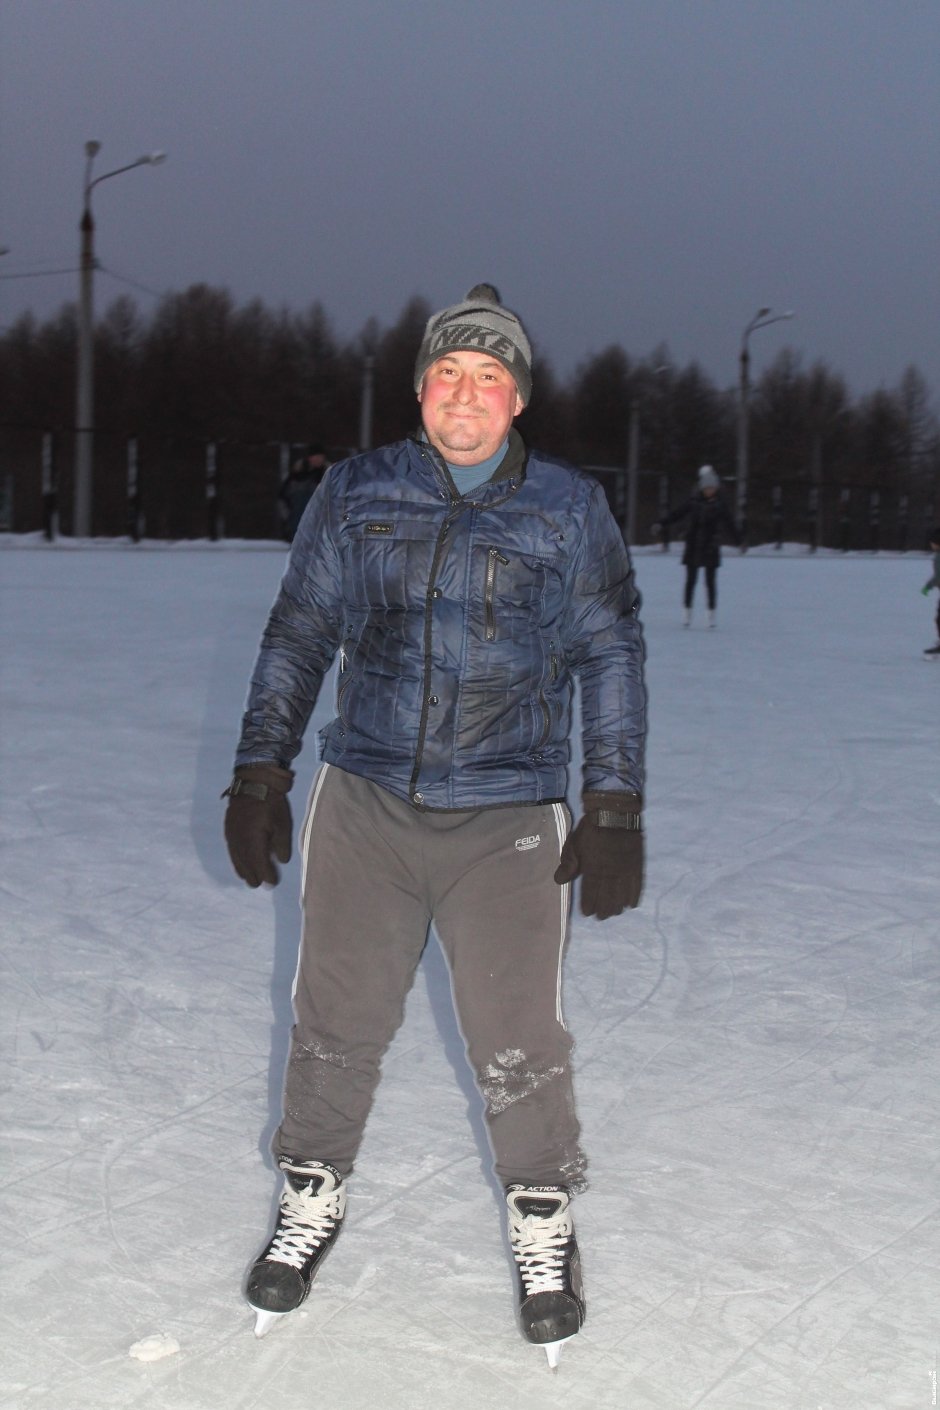 Сергей, 33 года, судебный пристав В санях Дед Мороз не так устает, ведь подарки — большая ноша. Это и удобнее.